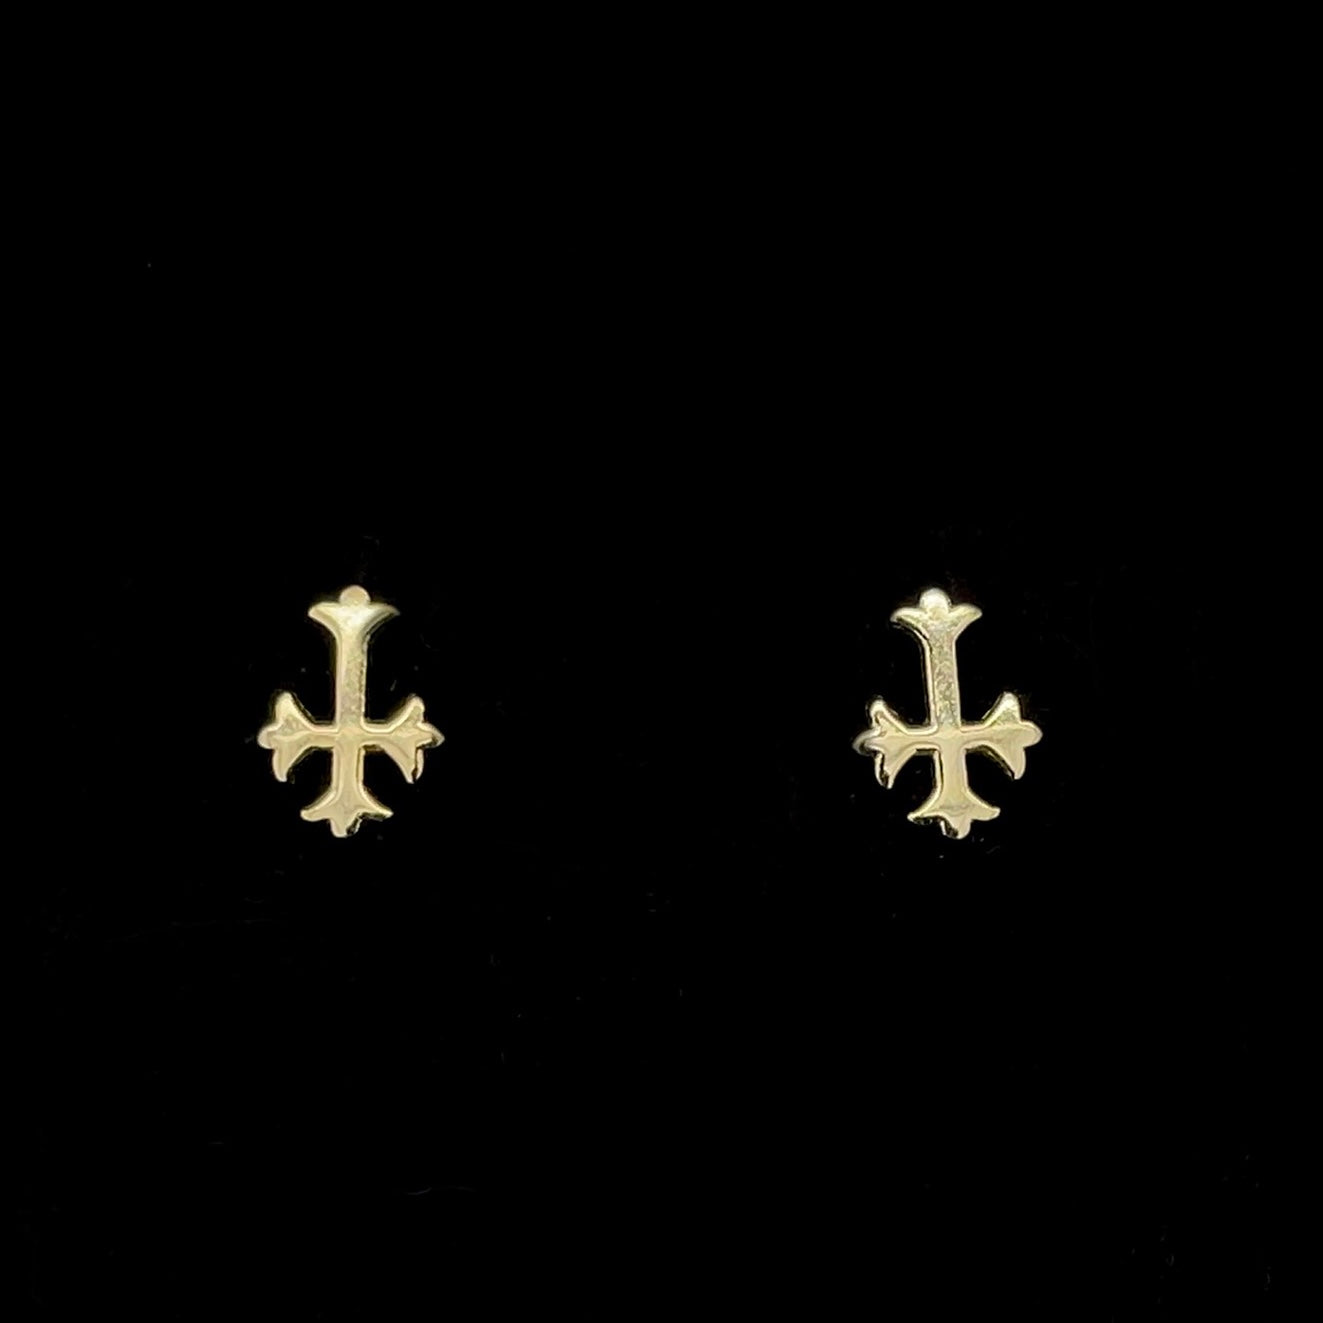 Upside Down Cross Earrings Gold